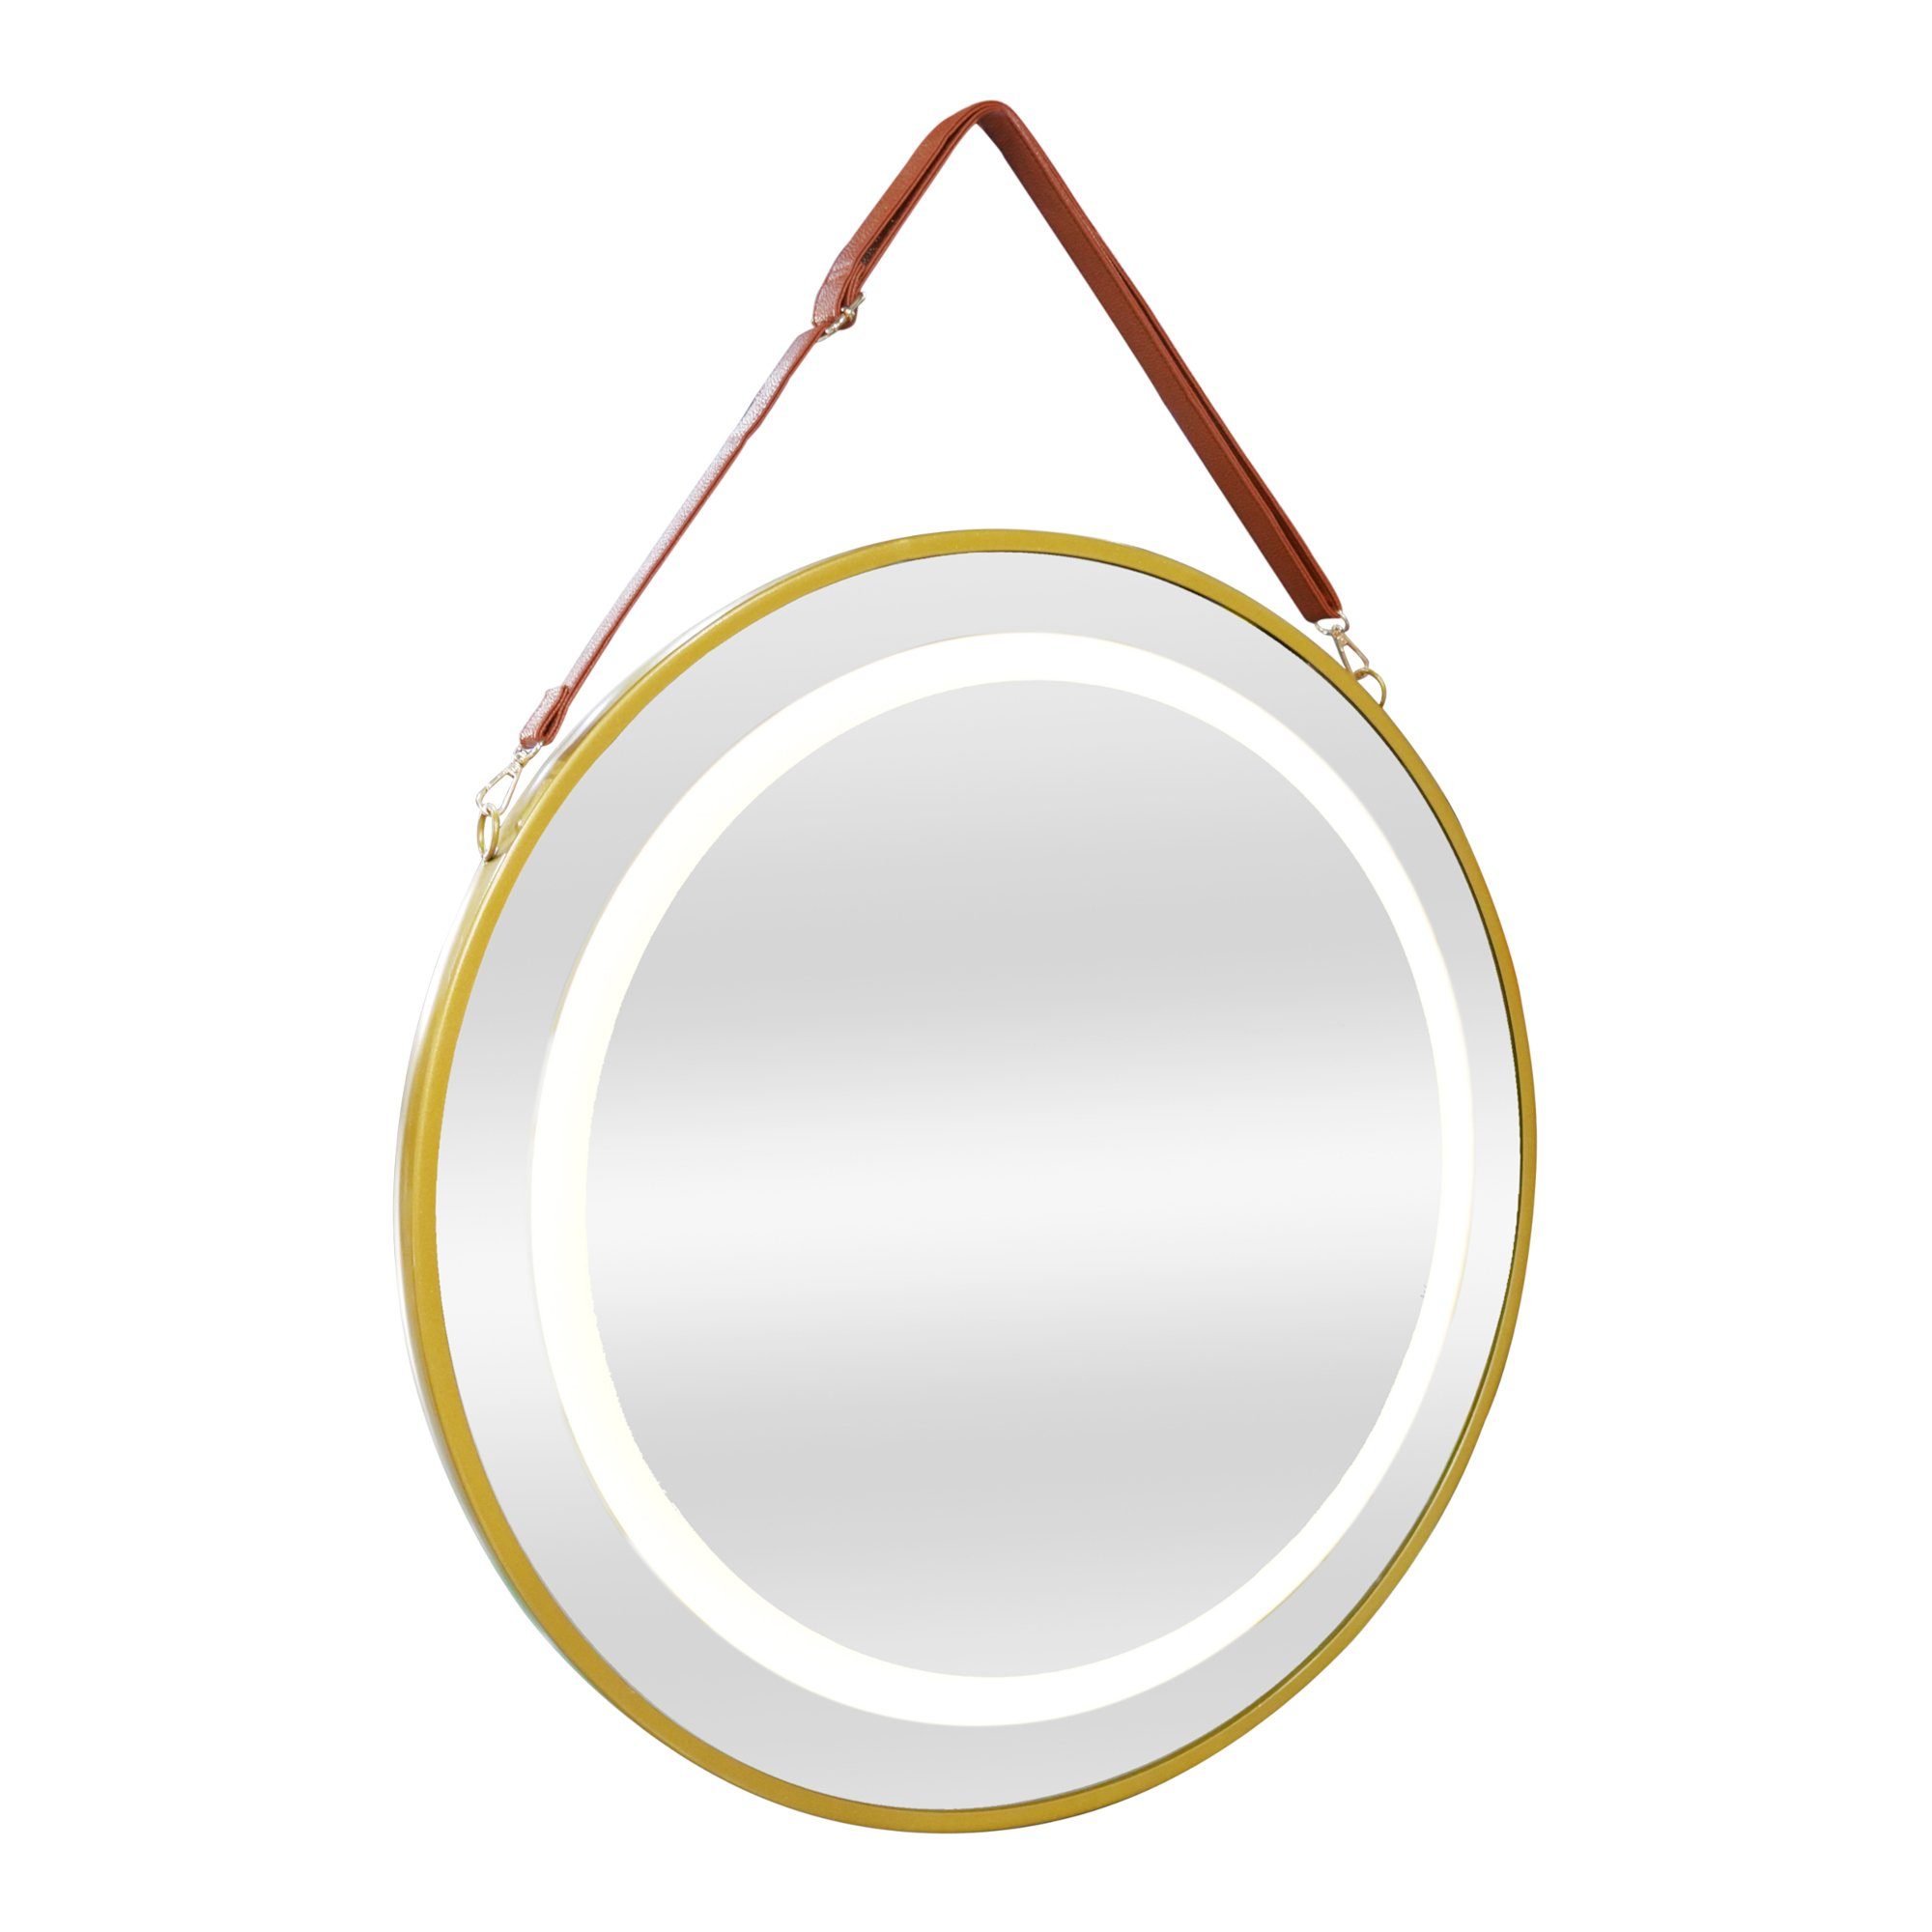 Aufhängung pro.tec 3 »Picerno« Badspiegel, Ø80cm Beleuchtung Lichtfarben mit Gold LED